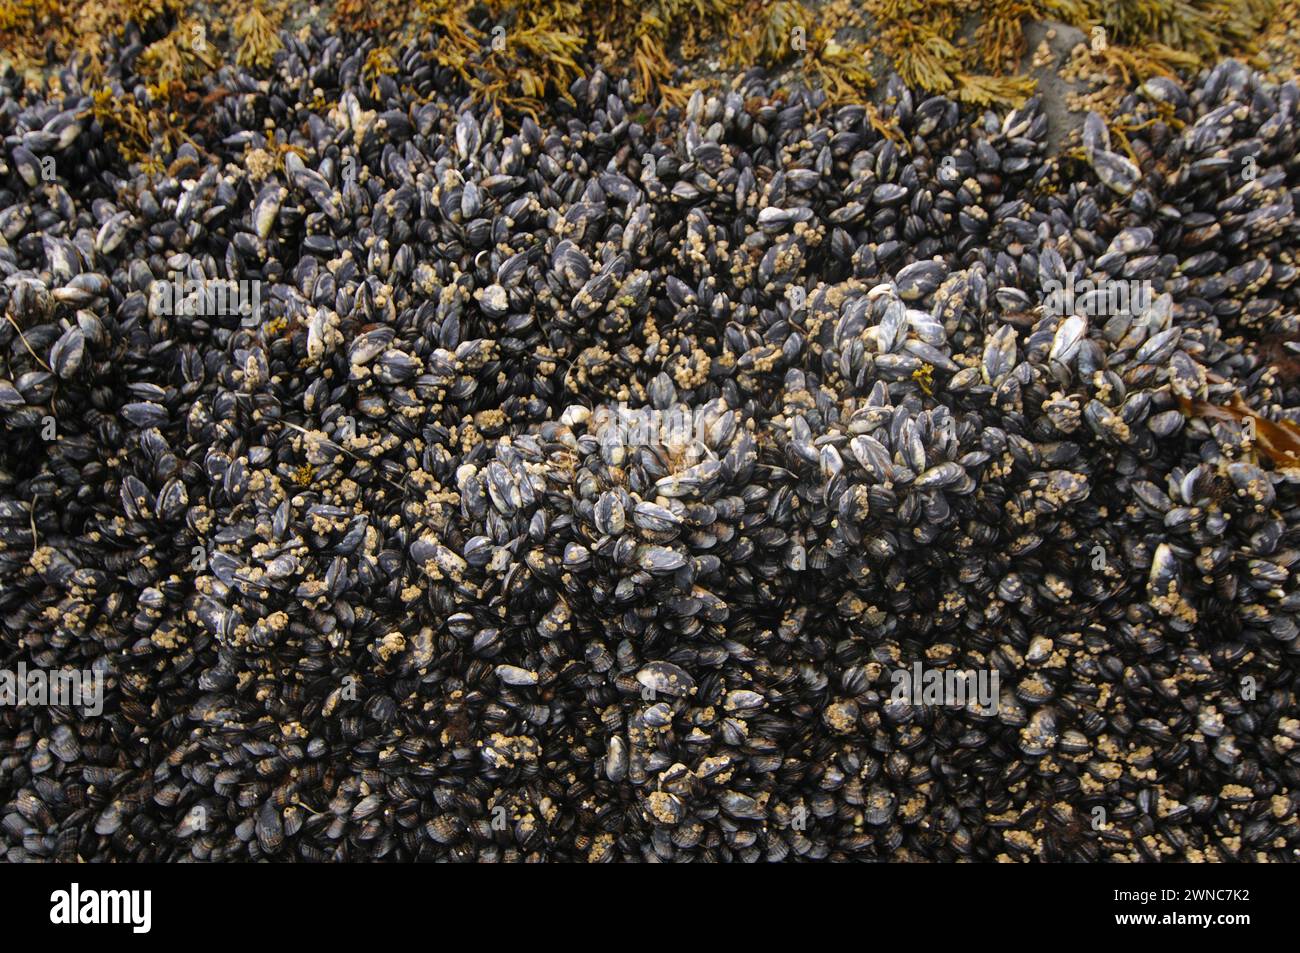 Muscles nourriture comestible sur les rochers dans la zone intertidale sur la plage de shi shi shi parc national olympique washington State usa Banque D'Images